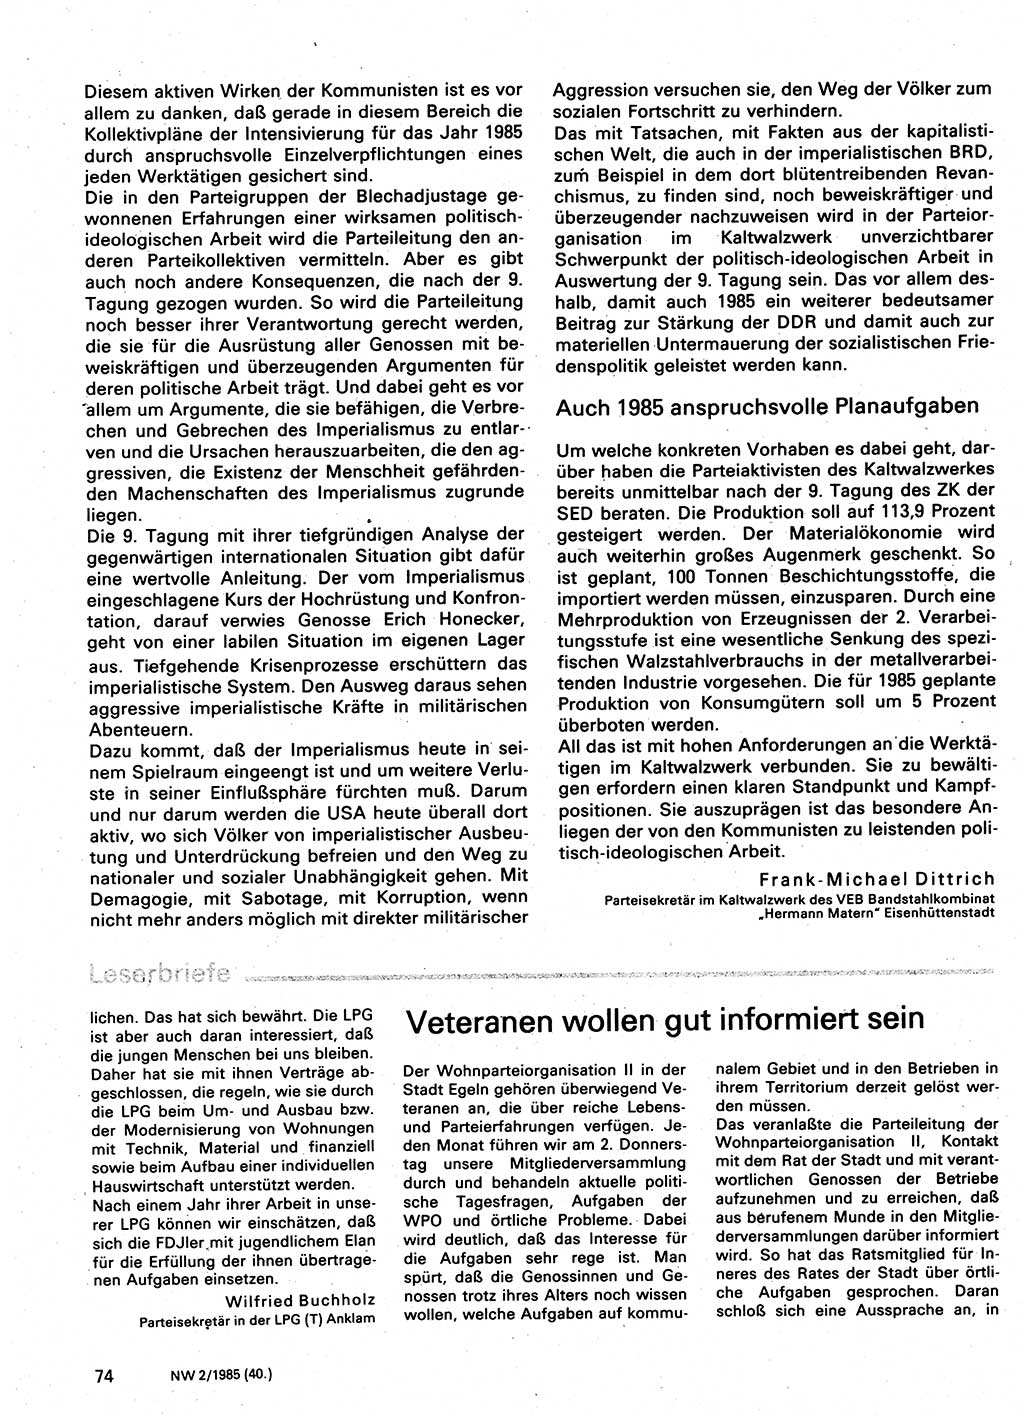 Neuer Weg (NW), Organ des Zentralkomitees (ZK) der SED (Sozialistische Einheitspartei Deutschlands) für Fragen des Parteilebens, 40. Jahrgang [Deutsche Demokratische Republik (DDR)] 1985, Seite 74 (NW ZK SED DDR 1985, S. 74)